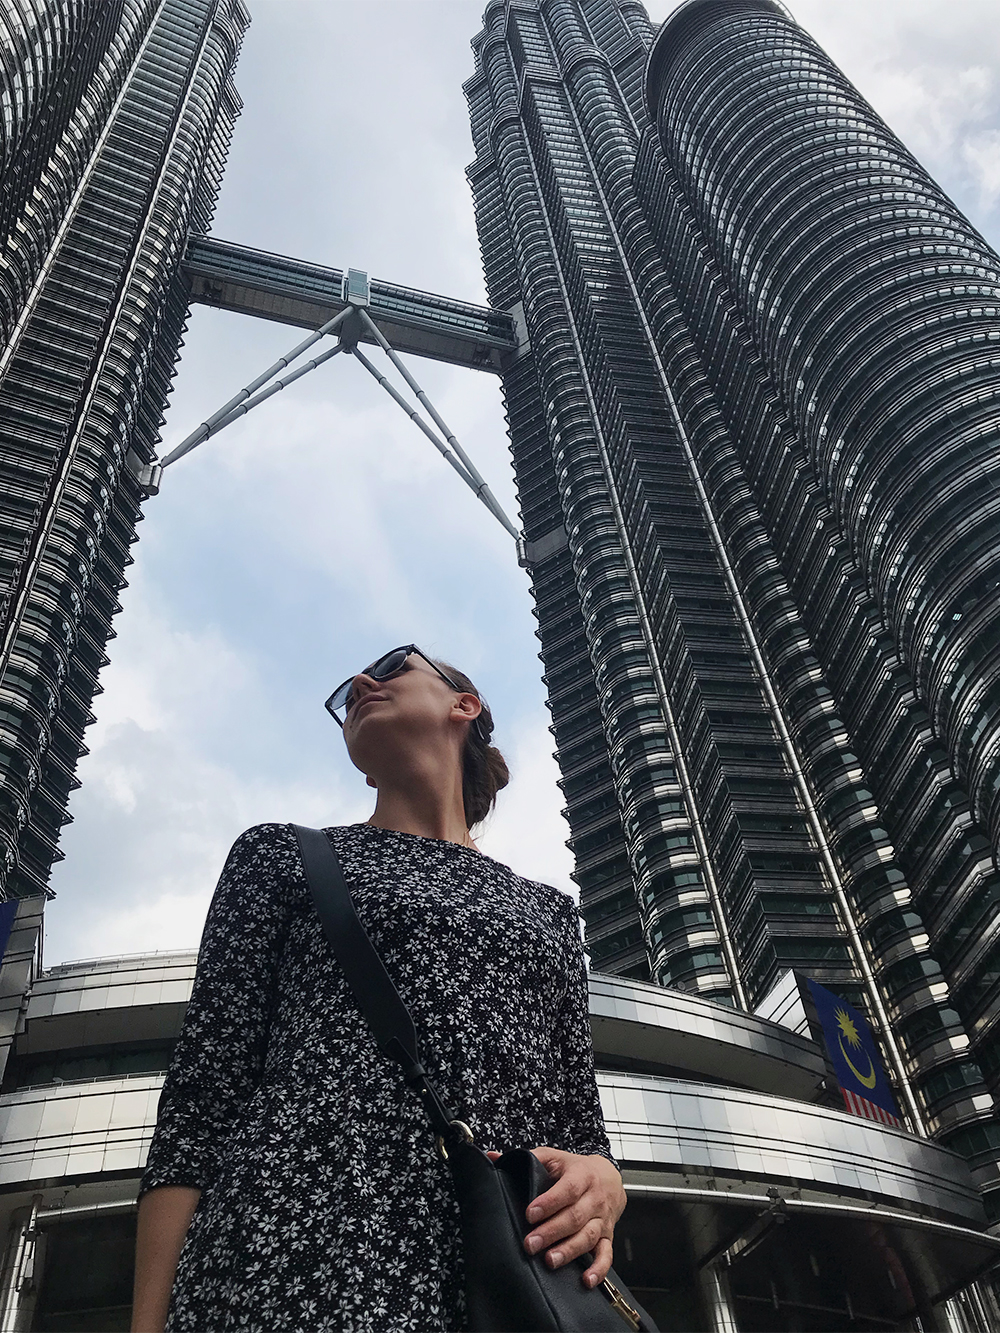 У меня за спиной главная достопримечательность Куала-Лумпура, столицы Малайзии, — Башни Петронас, даже не помещаются в объектив